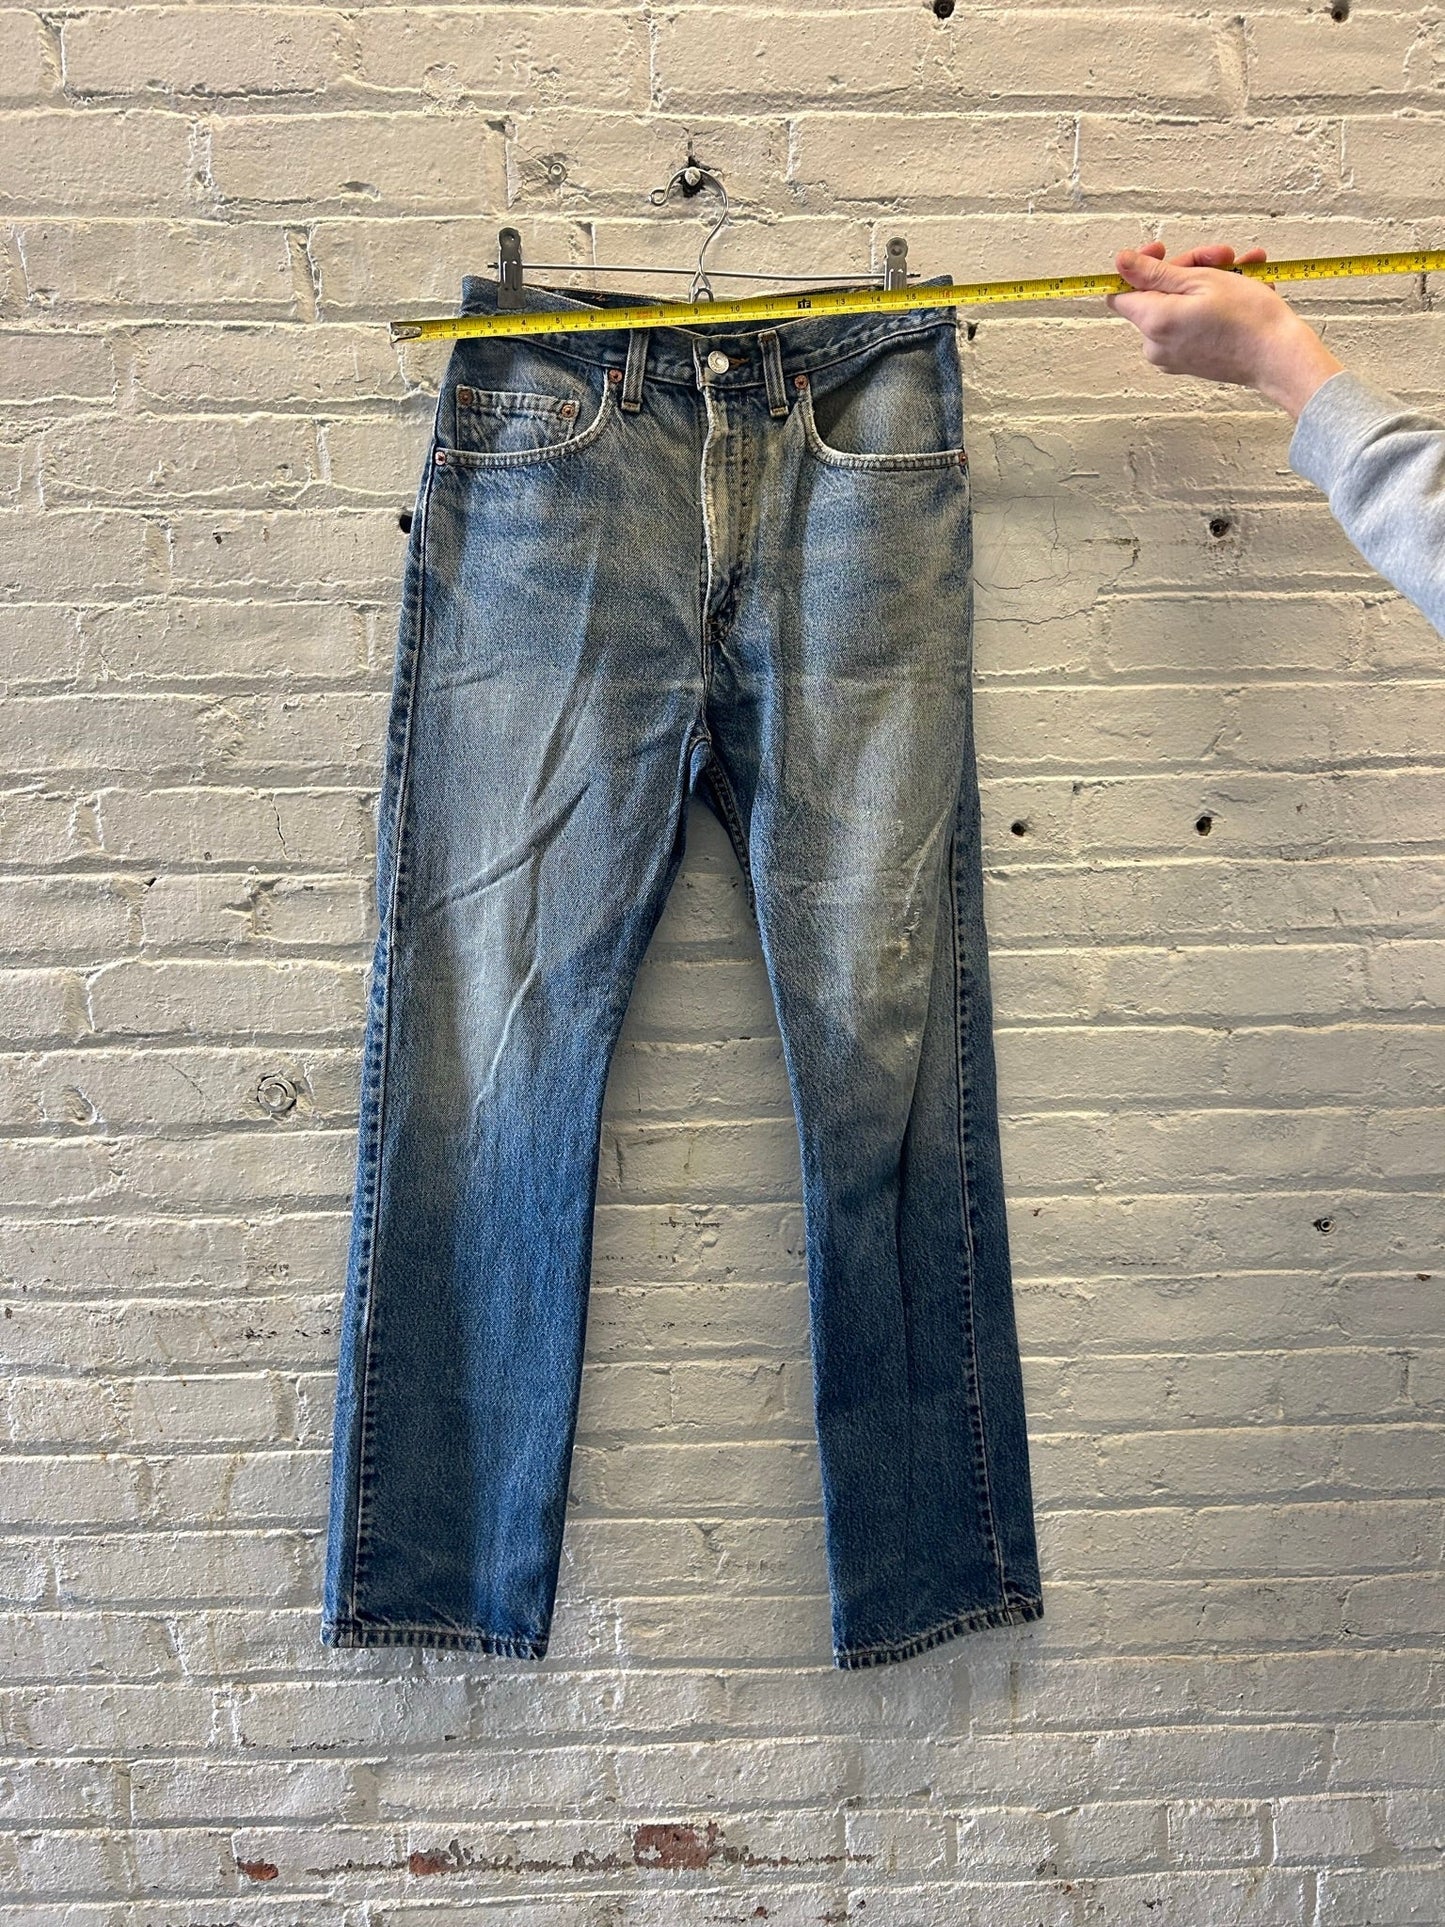 Levi's 505 Jeans Size 31x32